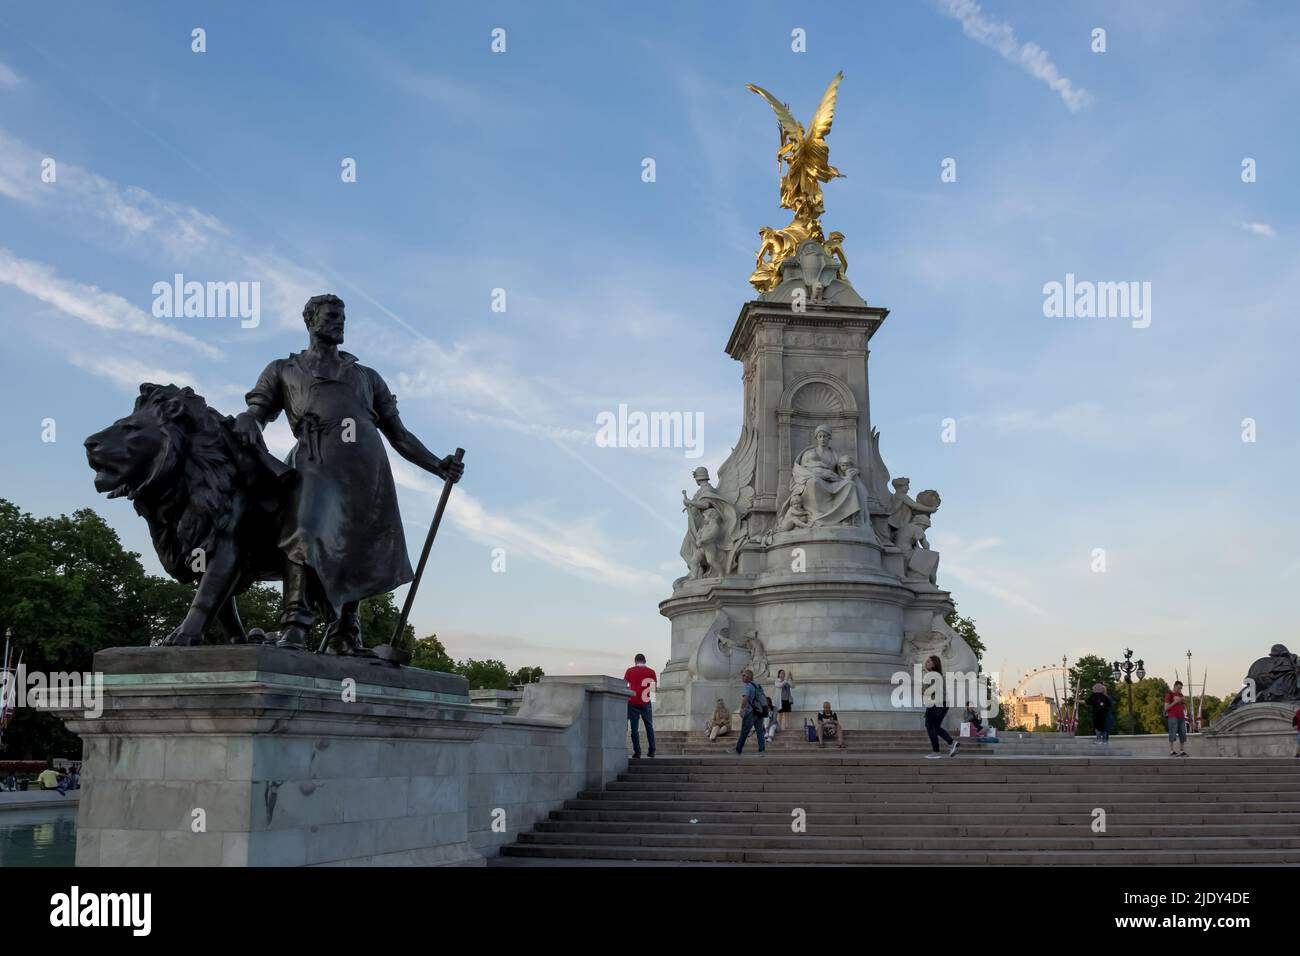 Detalle arquitectónico del Victoria Memorial, monumento a la Reina Victoria, ubicado al final del Mall. Al fondo, el Palacio de Buckingham Foto de stock